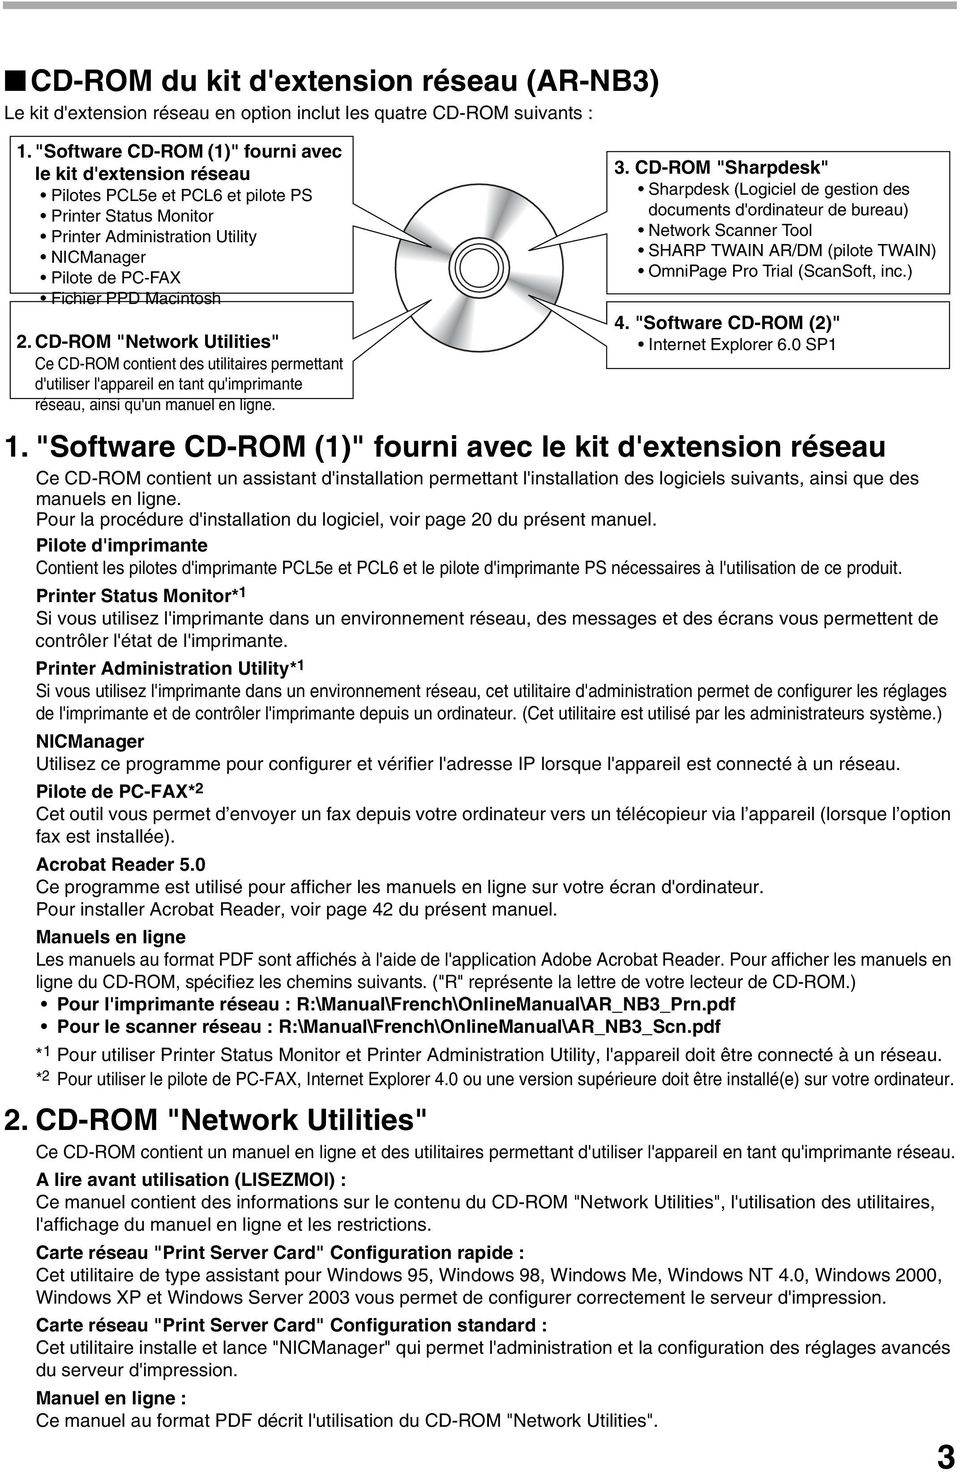 CD-ROM "Network Utilities" Ce CD-ROM contient des utilitaires permettant d'utiliser l'appareil en tant qu'imprimante réseau, ainsi qu'un manuel en ligne.